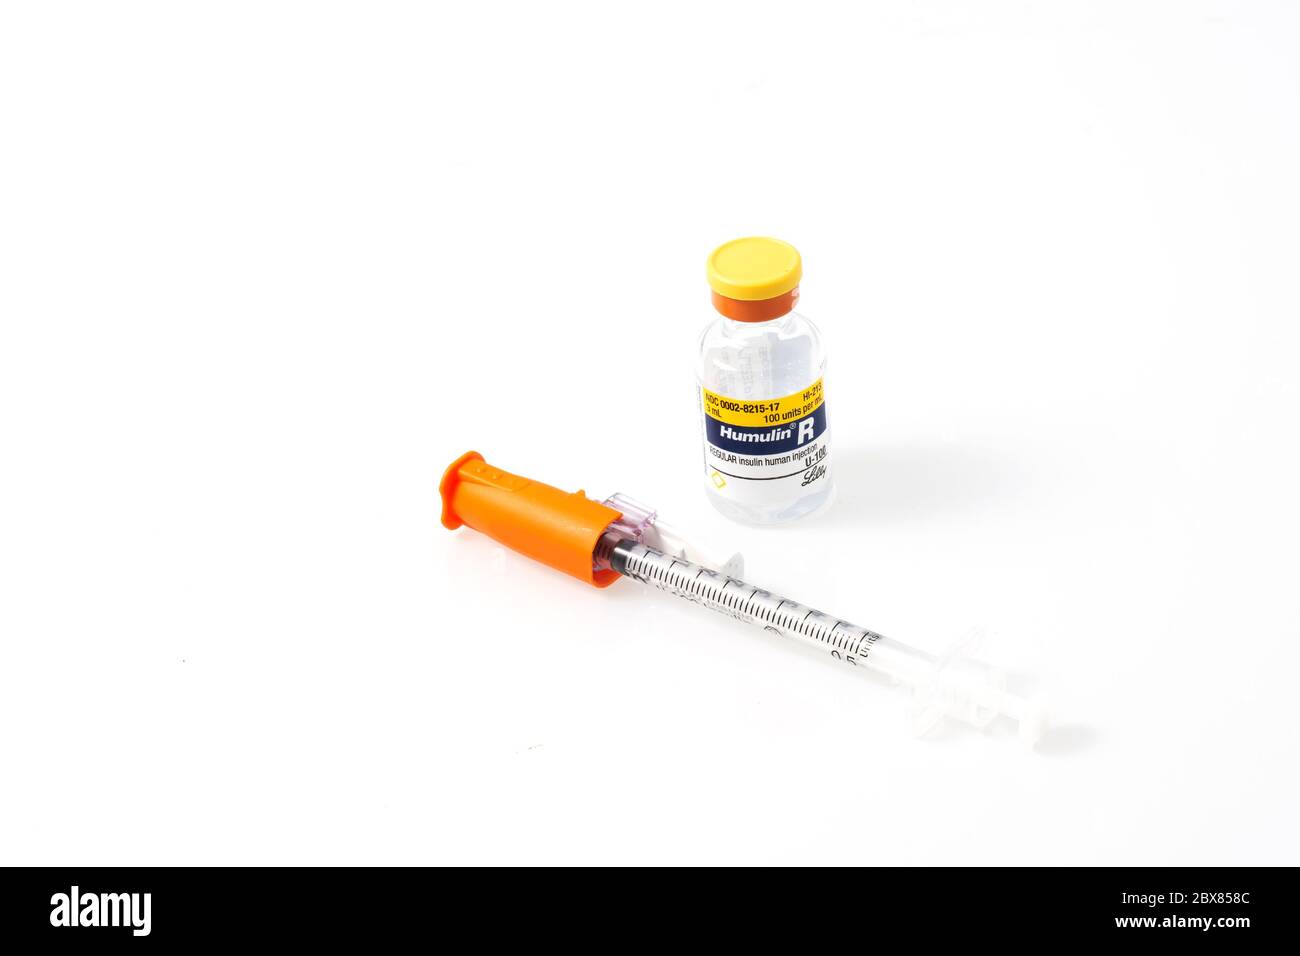 Portland, O maggio 17 2020. Un flaconcino di Humulin R Insulin, un farmaco essenziale per il diabete, e una speciale siringa di insulina su fondo bianco. Foto Stock